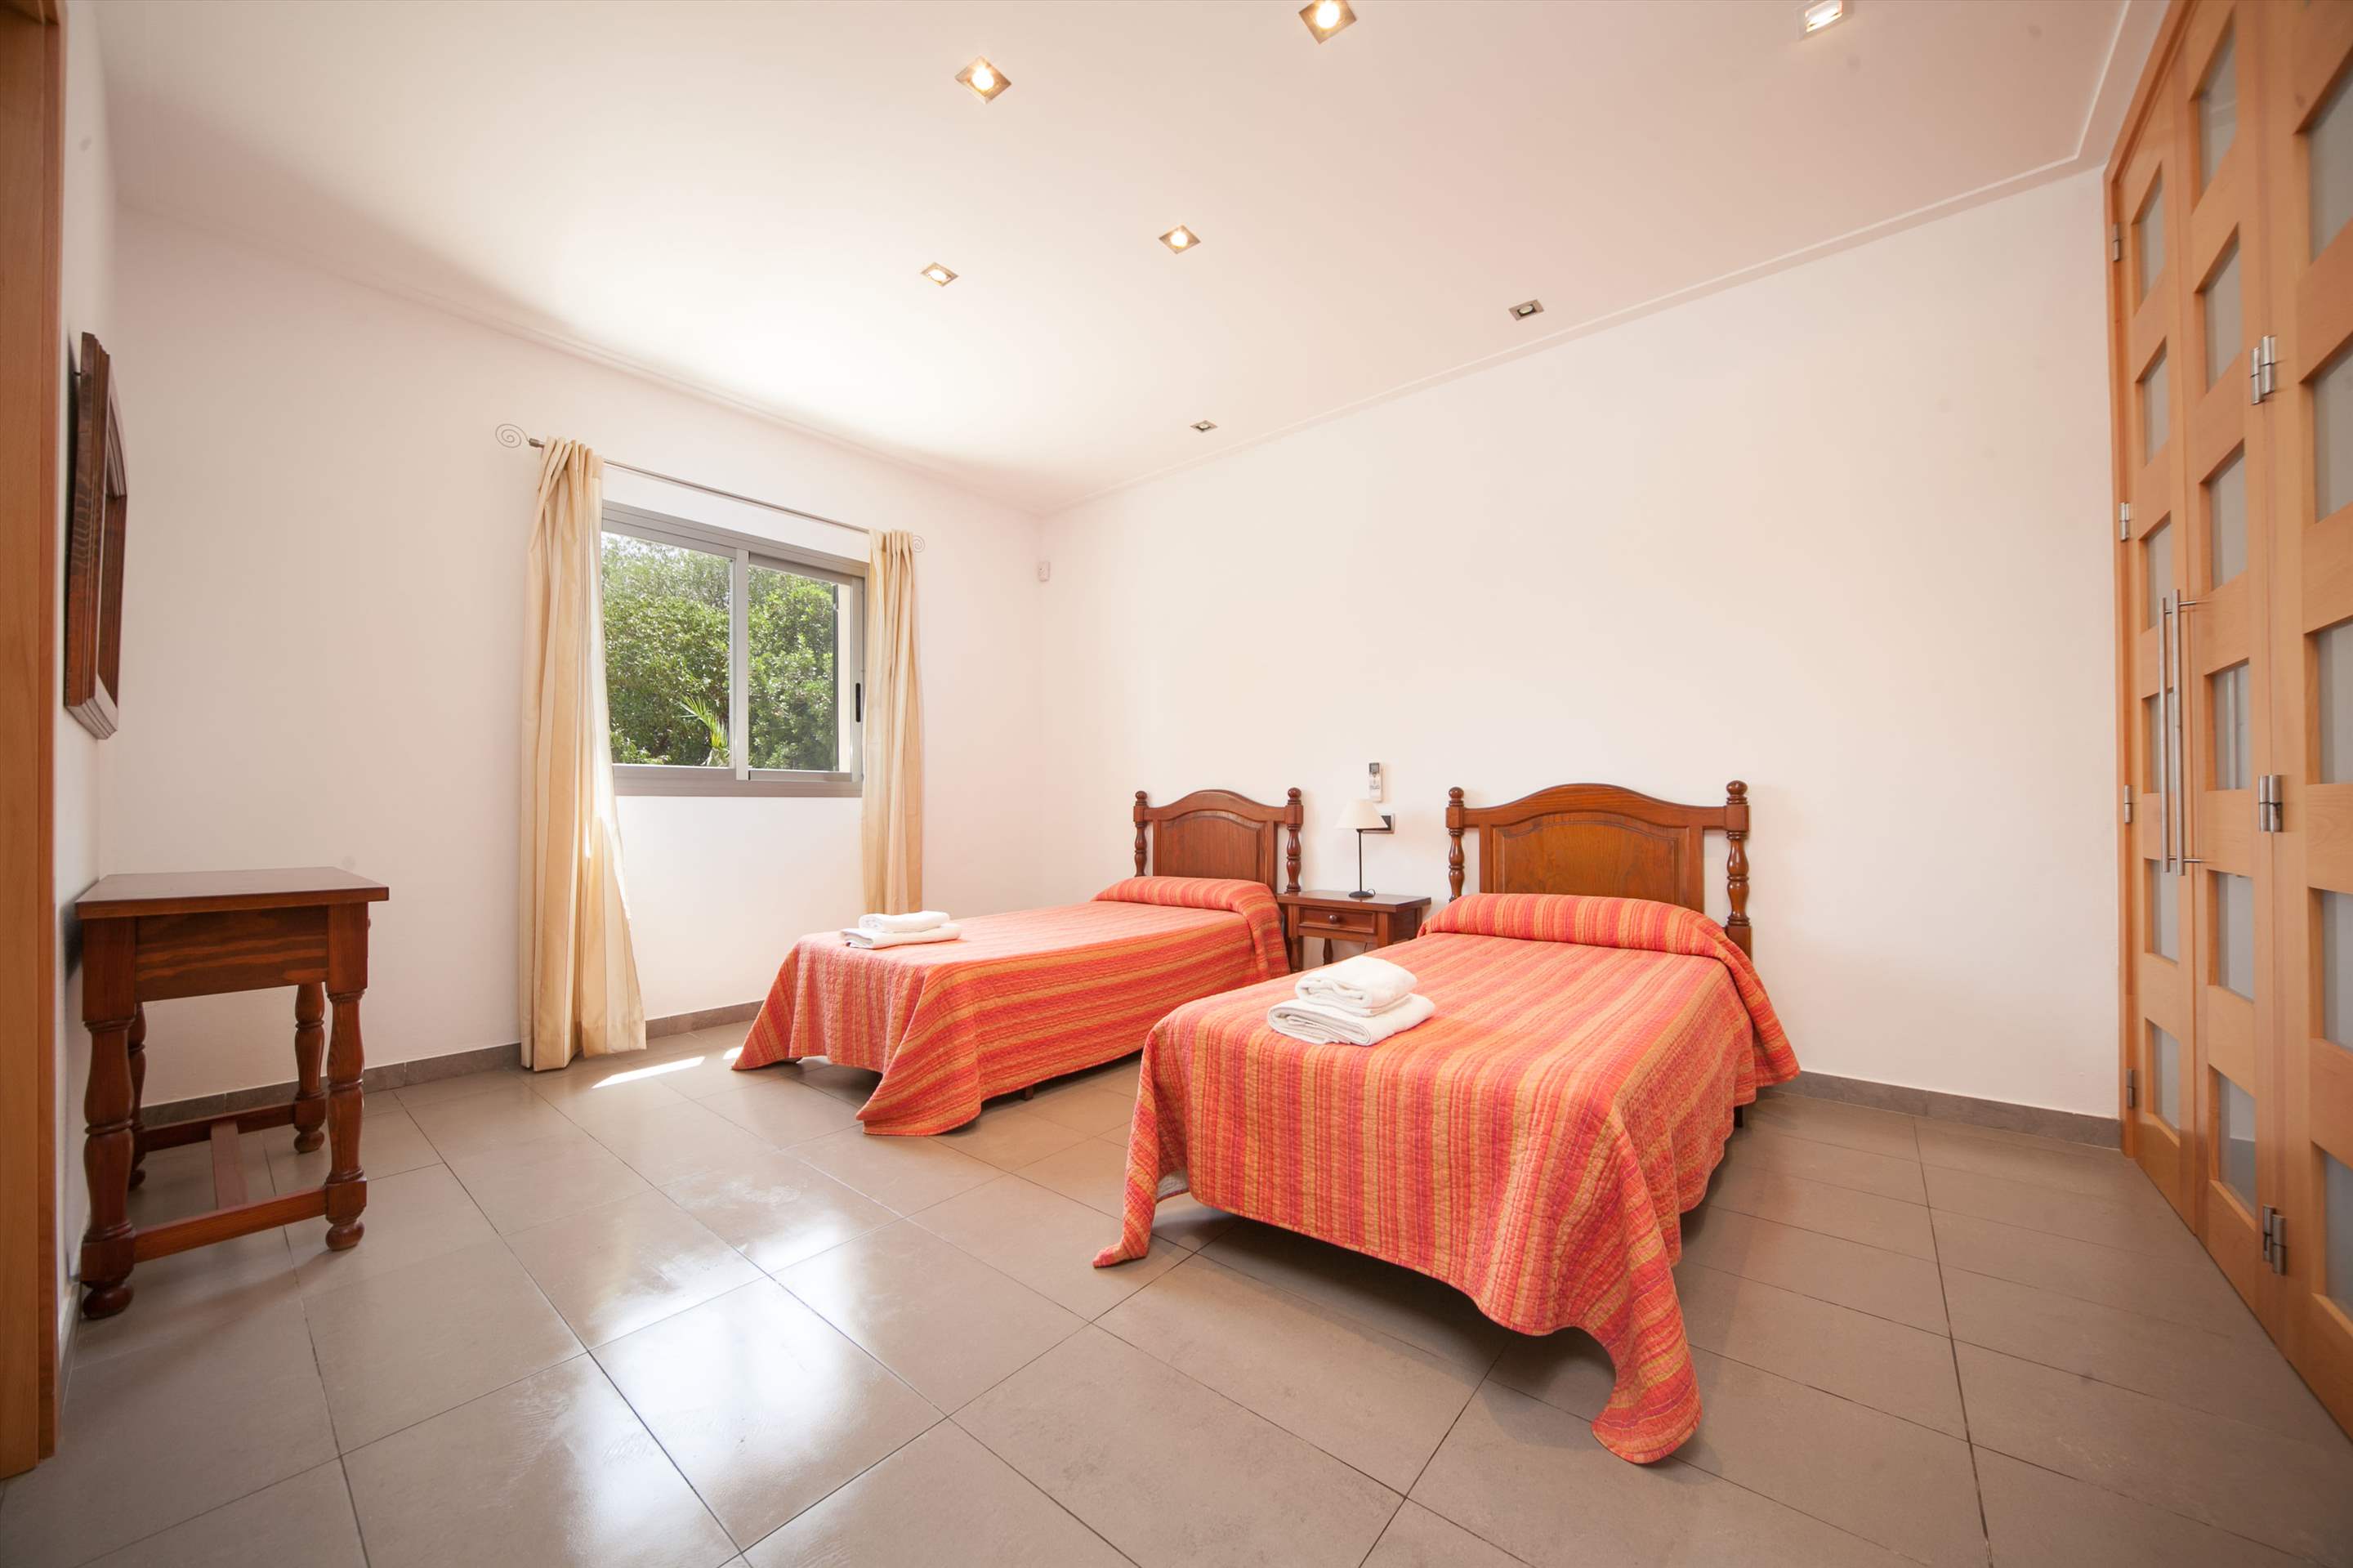 Embat, 3 bedroom villa in Pollensa & Puerto Pollensa, Majorca Photo #9